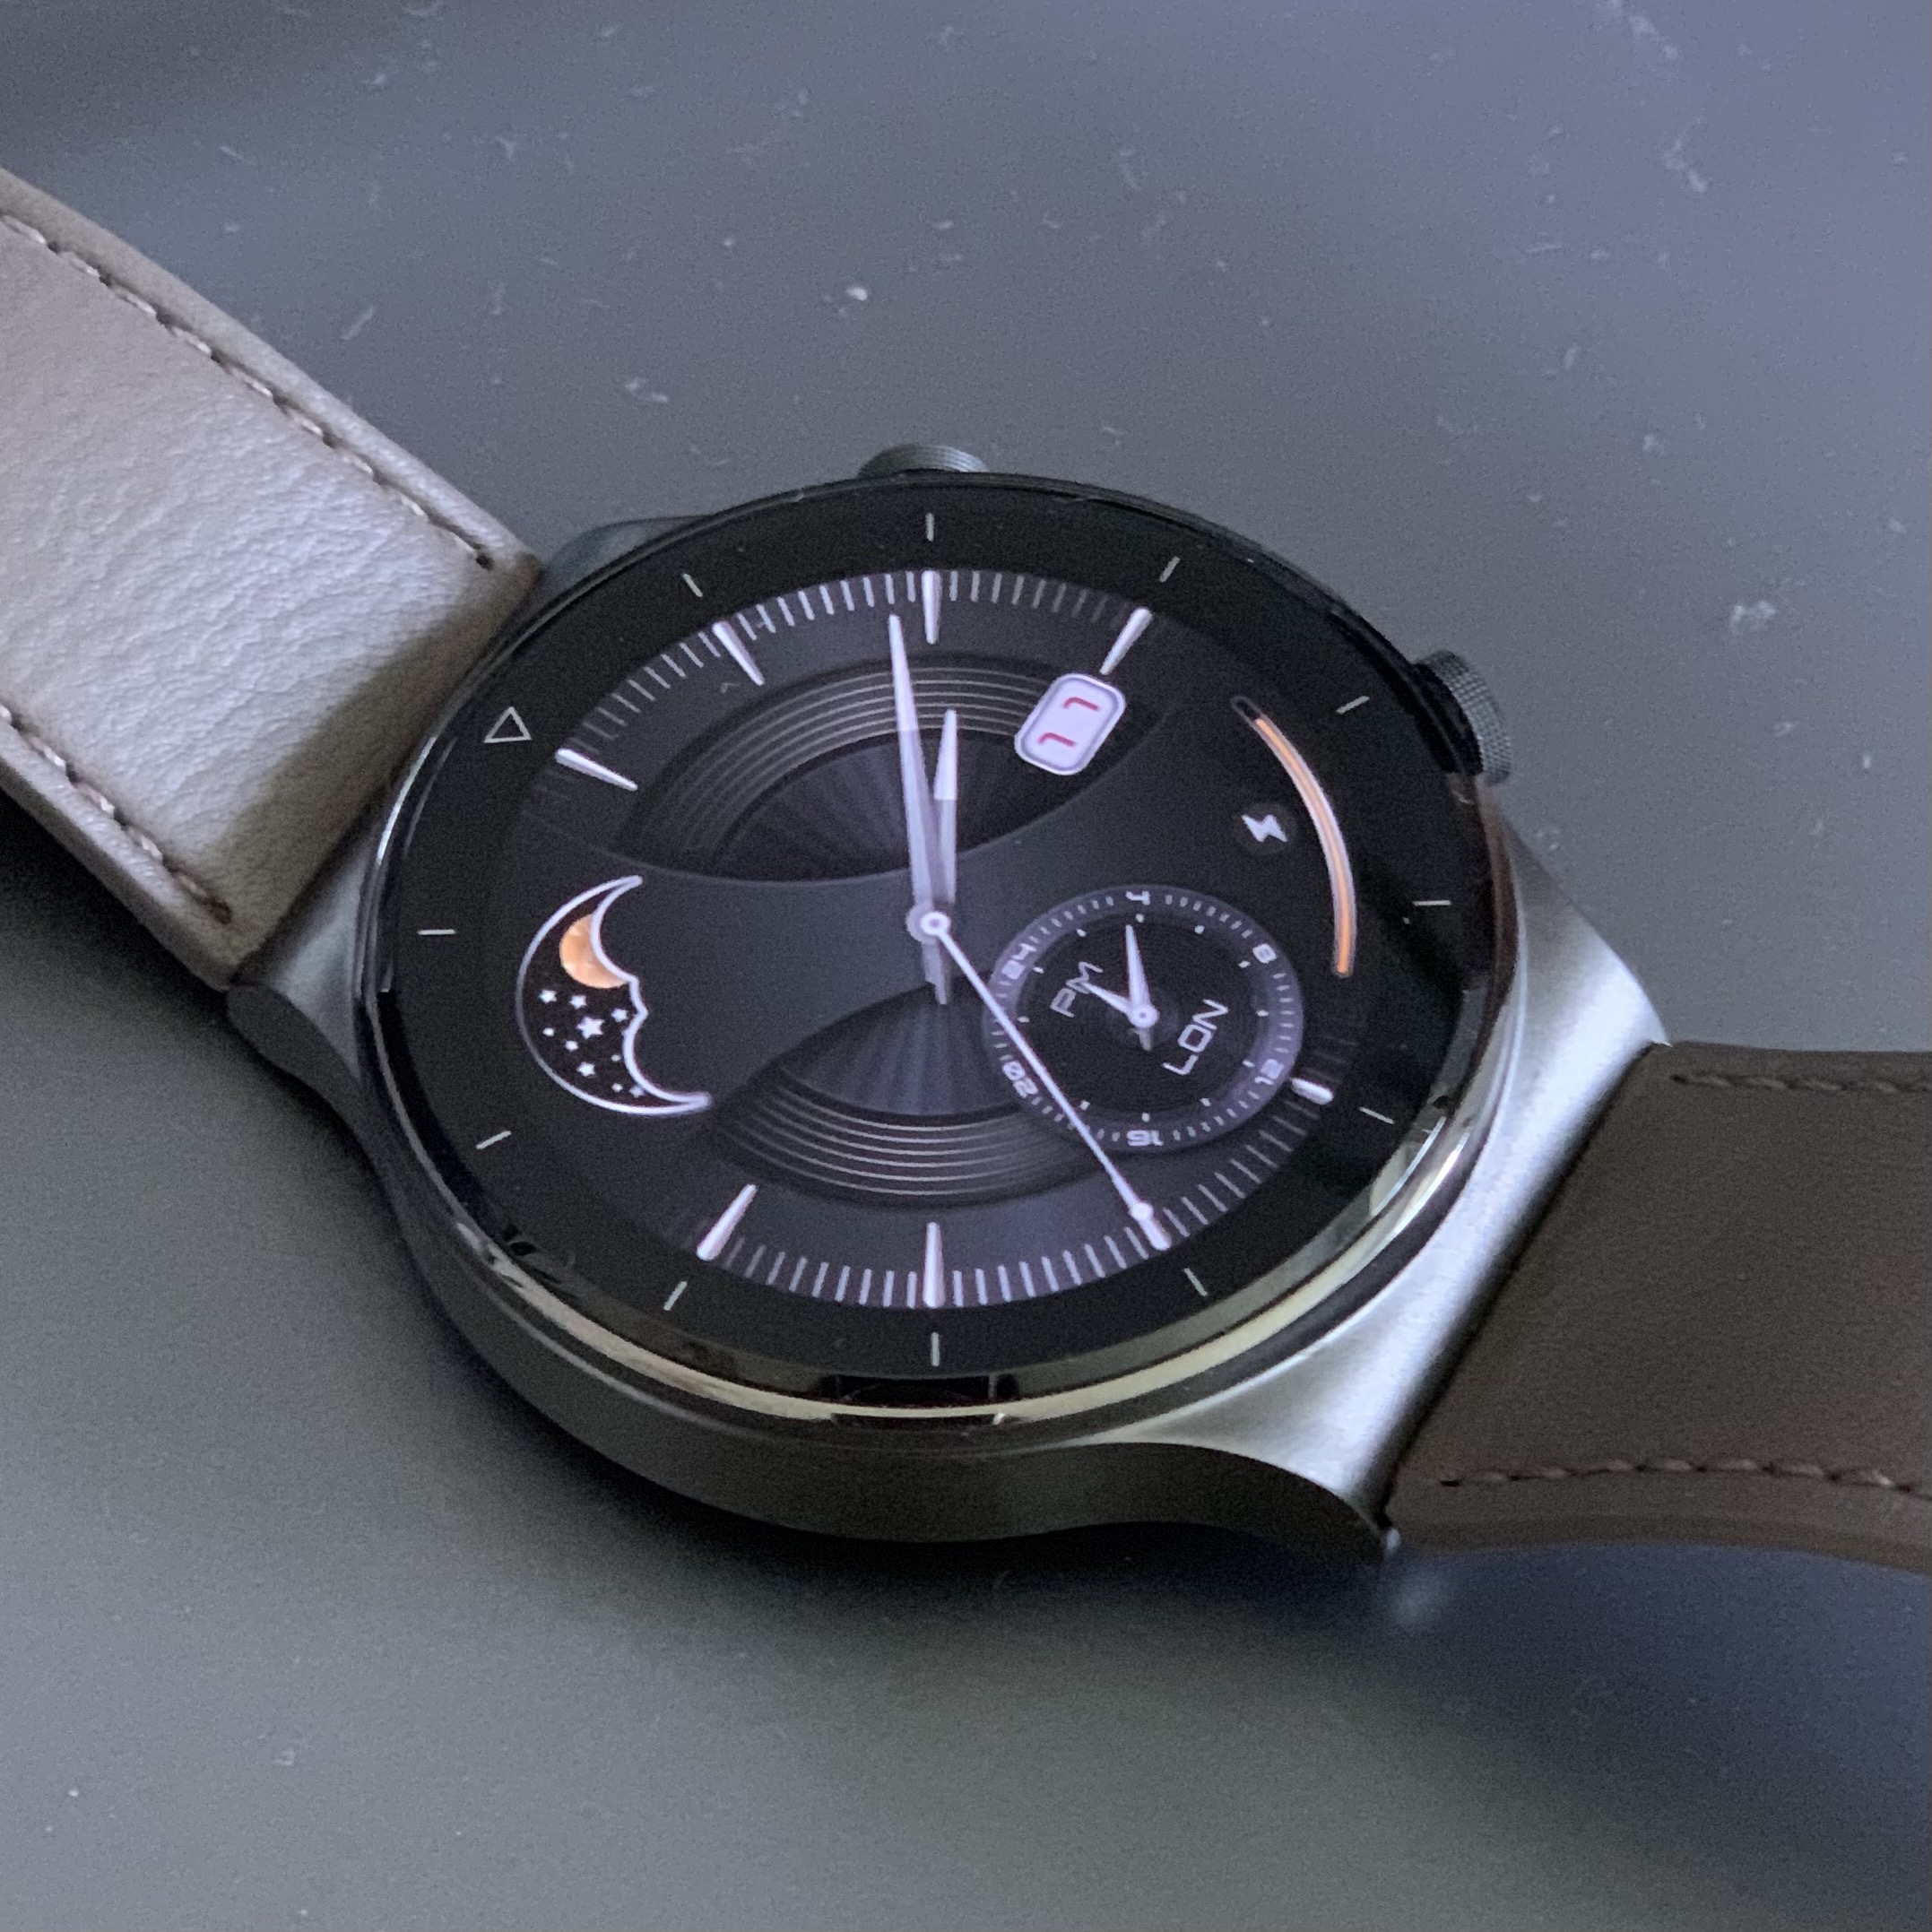 smartwatch Huawei Watch GT 2 Pro EKG elektrokardiogram kiedy premiera plotki przecieki